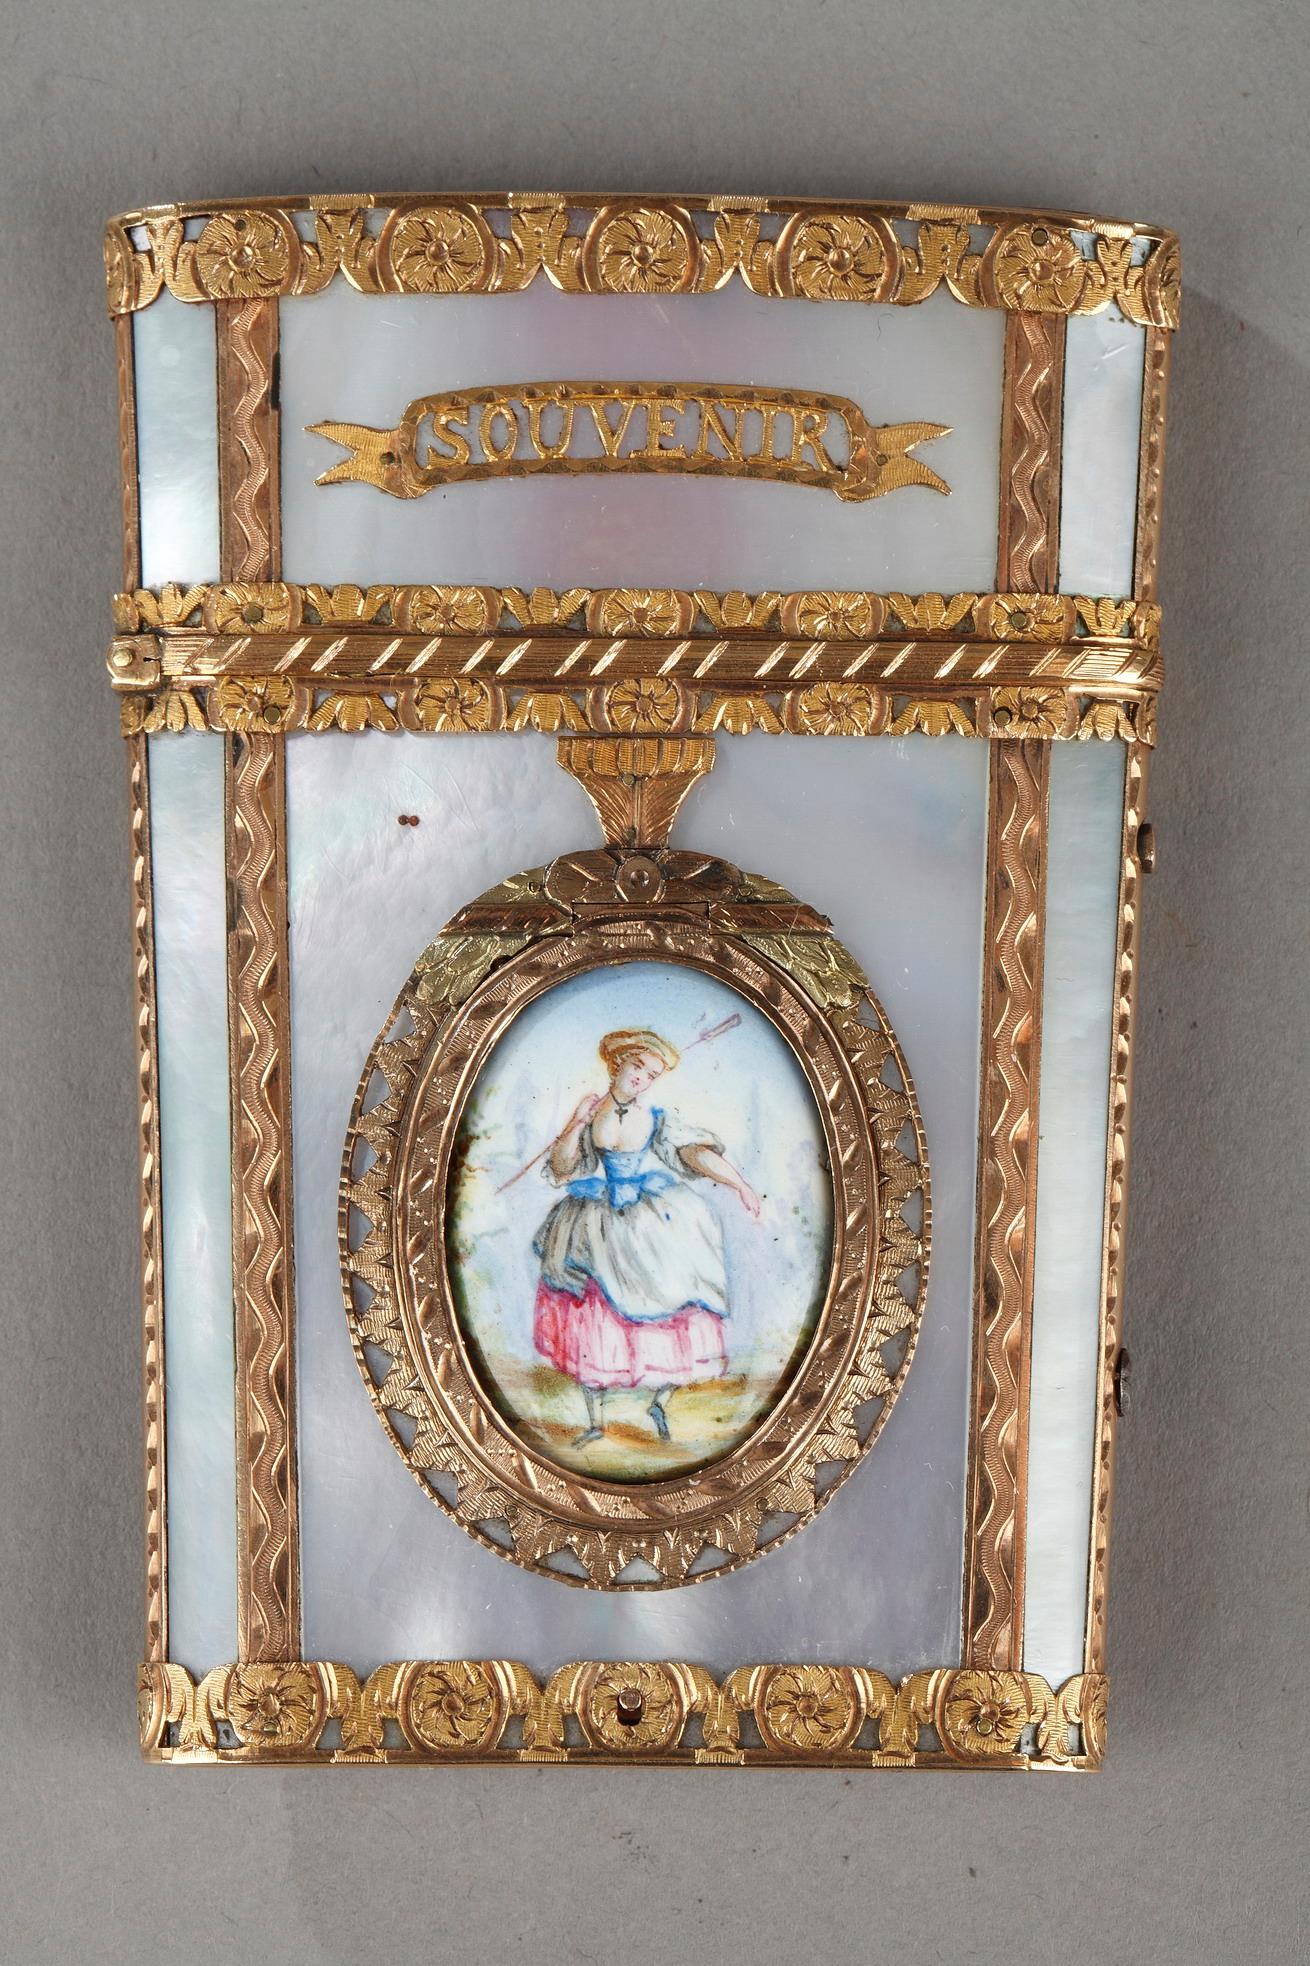 dancer card, secret, mother of pearl, gold, enamel, miniature, style 18th, 19th century, souvenir d'amitié